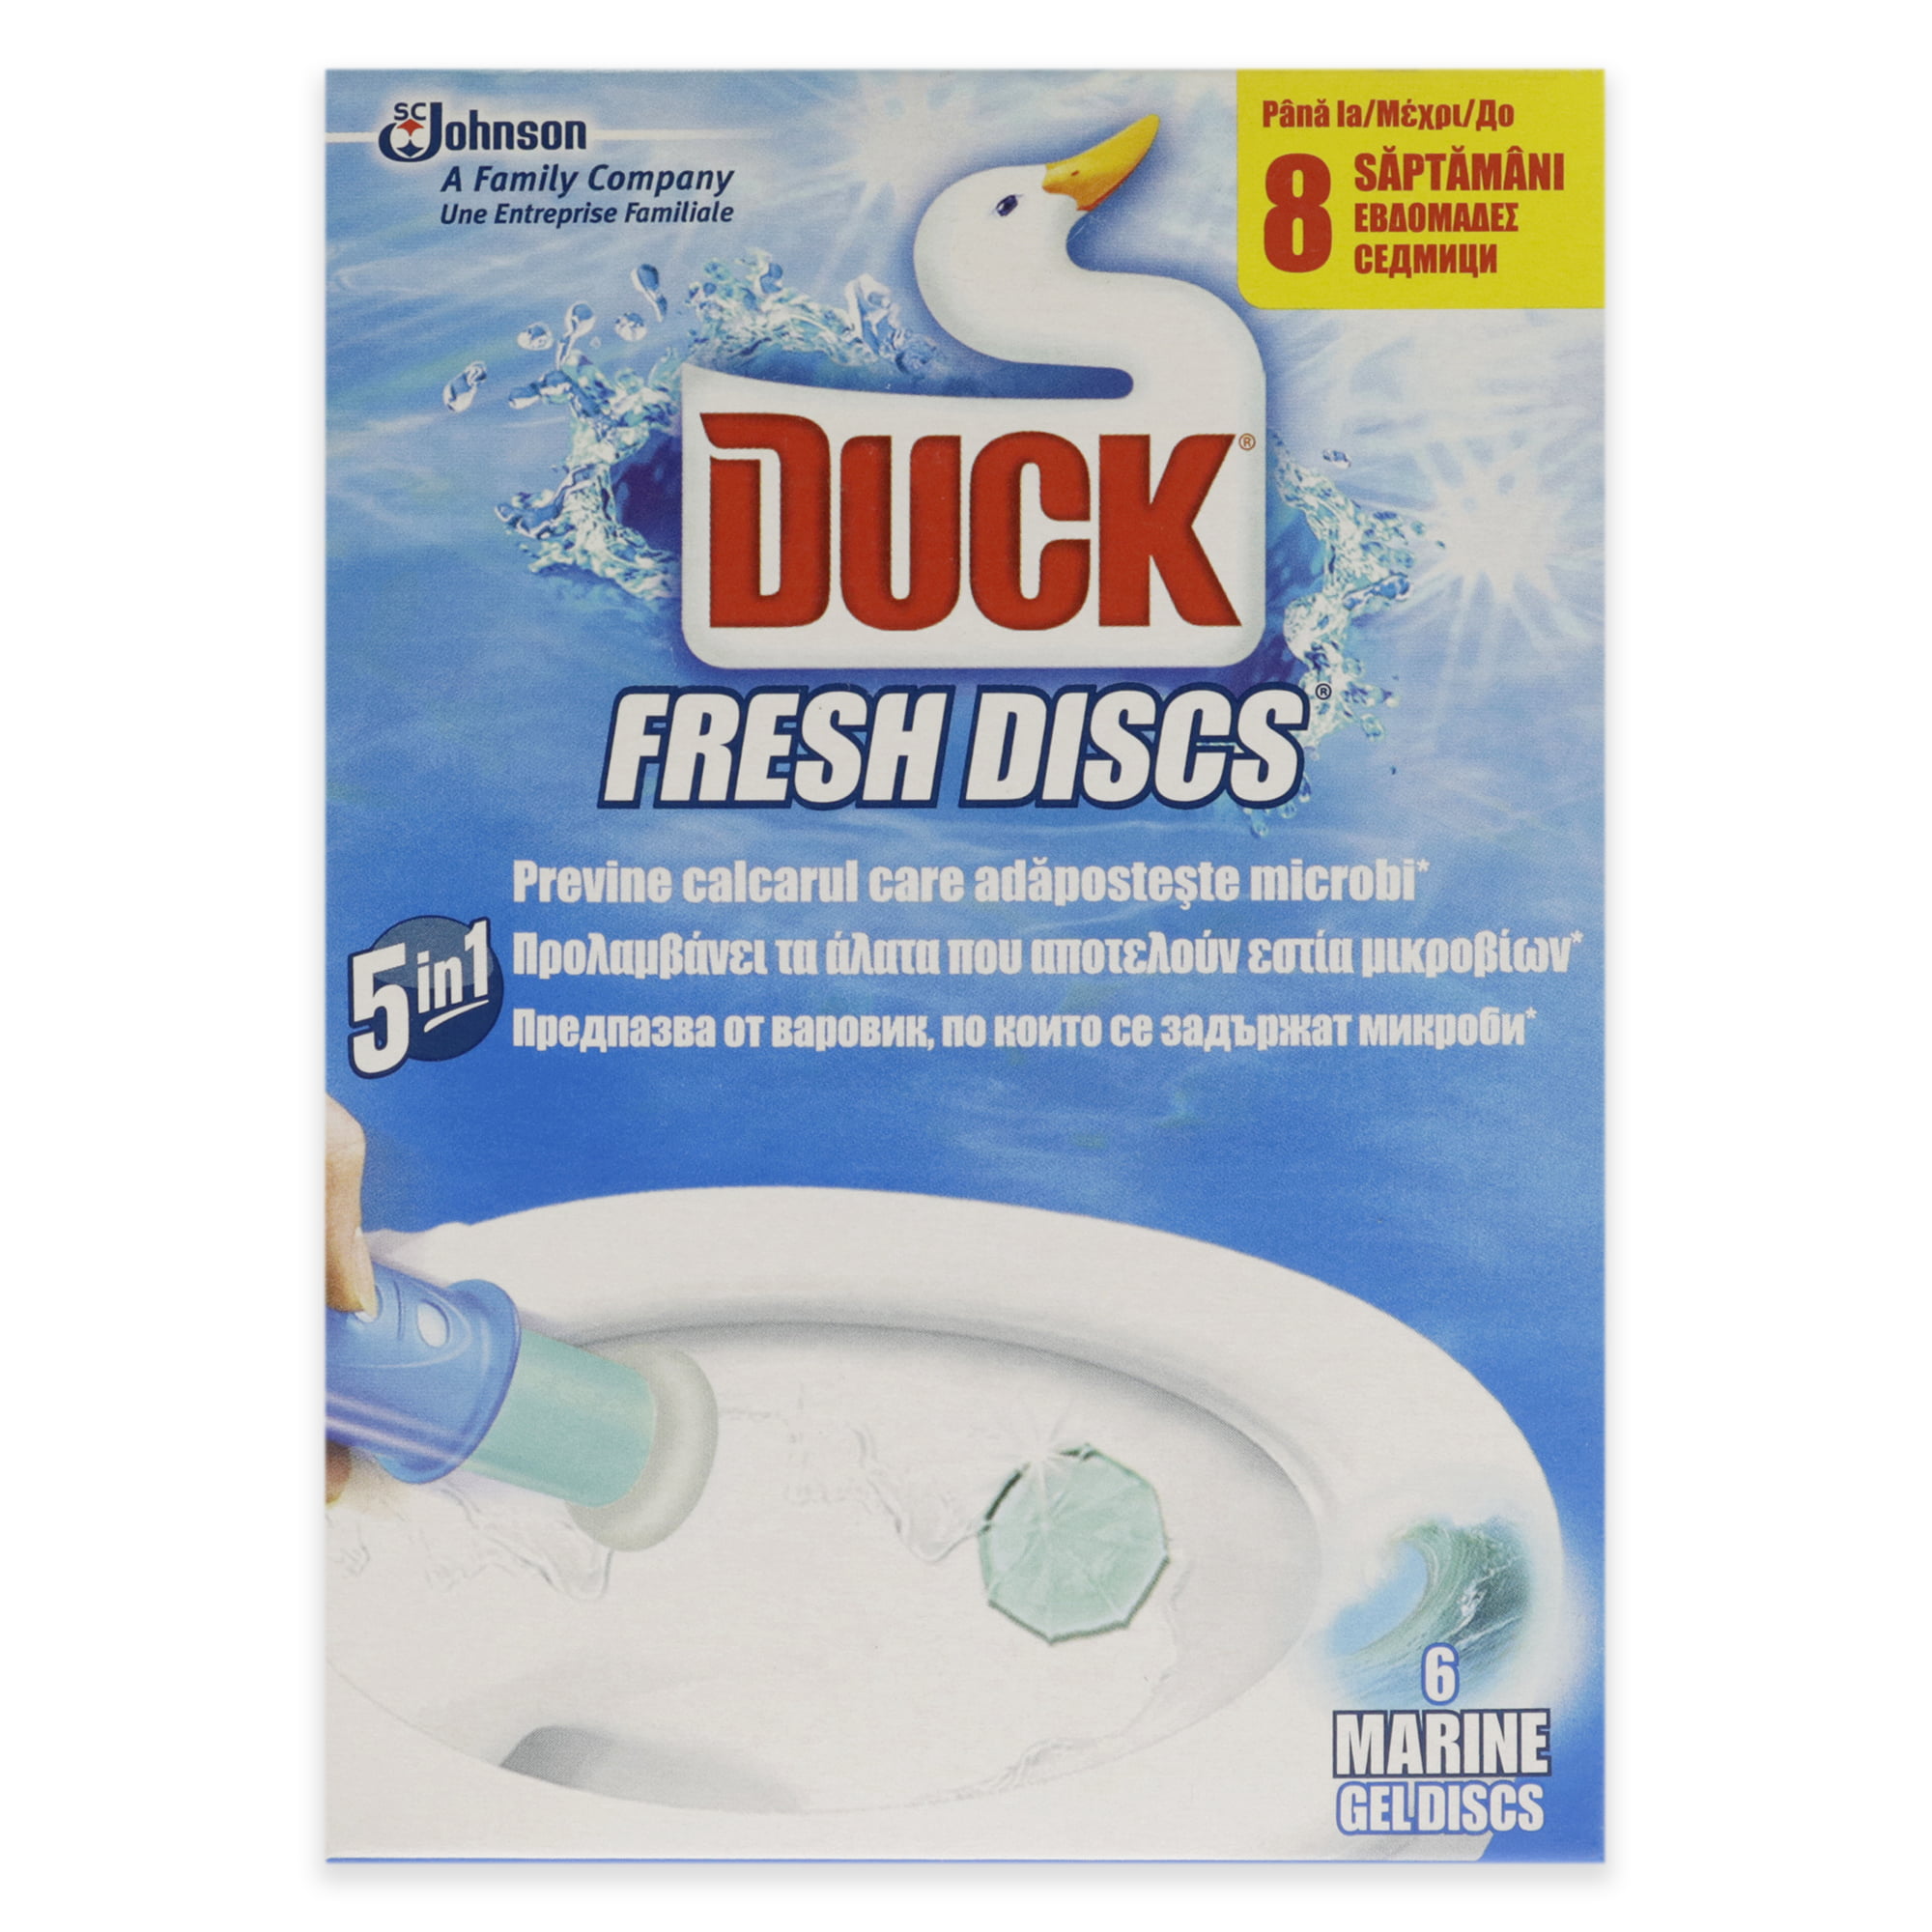 Duck Fresh Marine Dual-Discs speichern Scheibe Gel auf die Toilette 2 x  36ml - Supermarkt Online